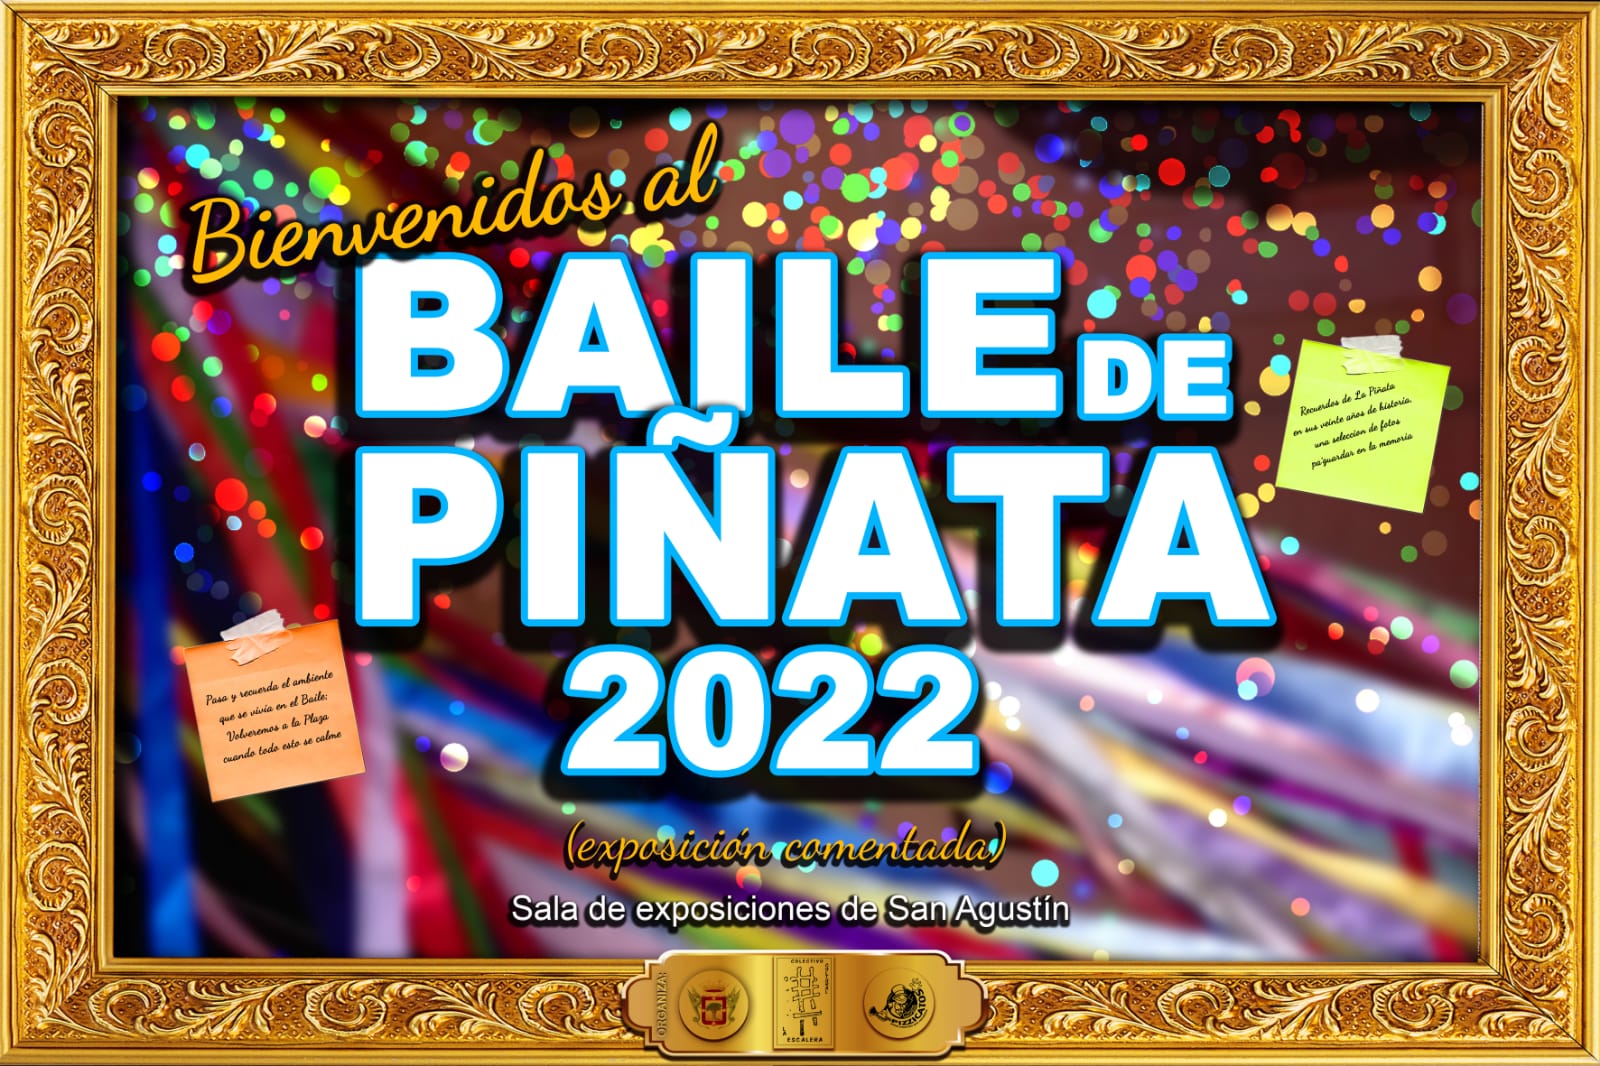 El Baile de Piñata de La Orotava se celebra este año de una manera distinta